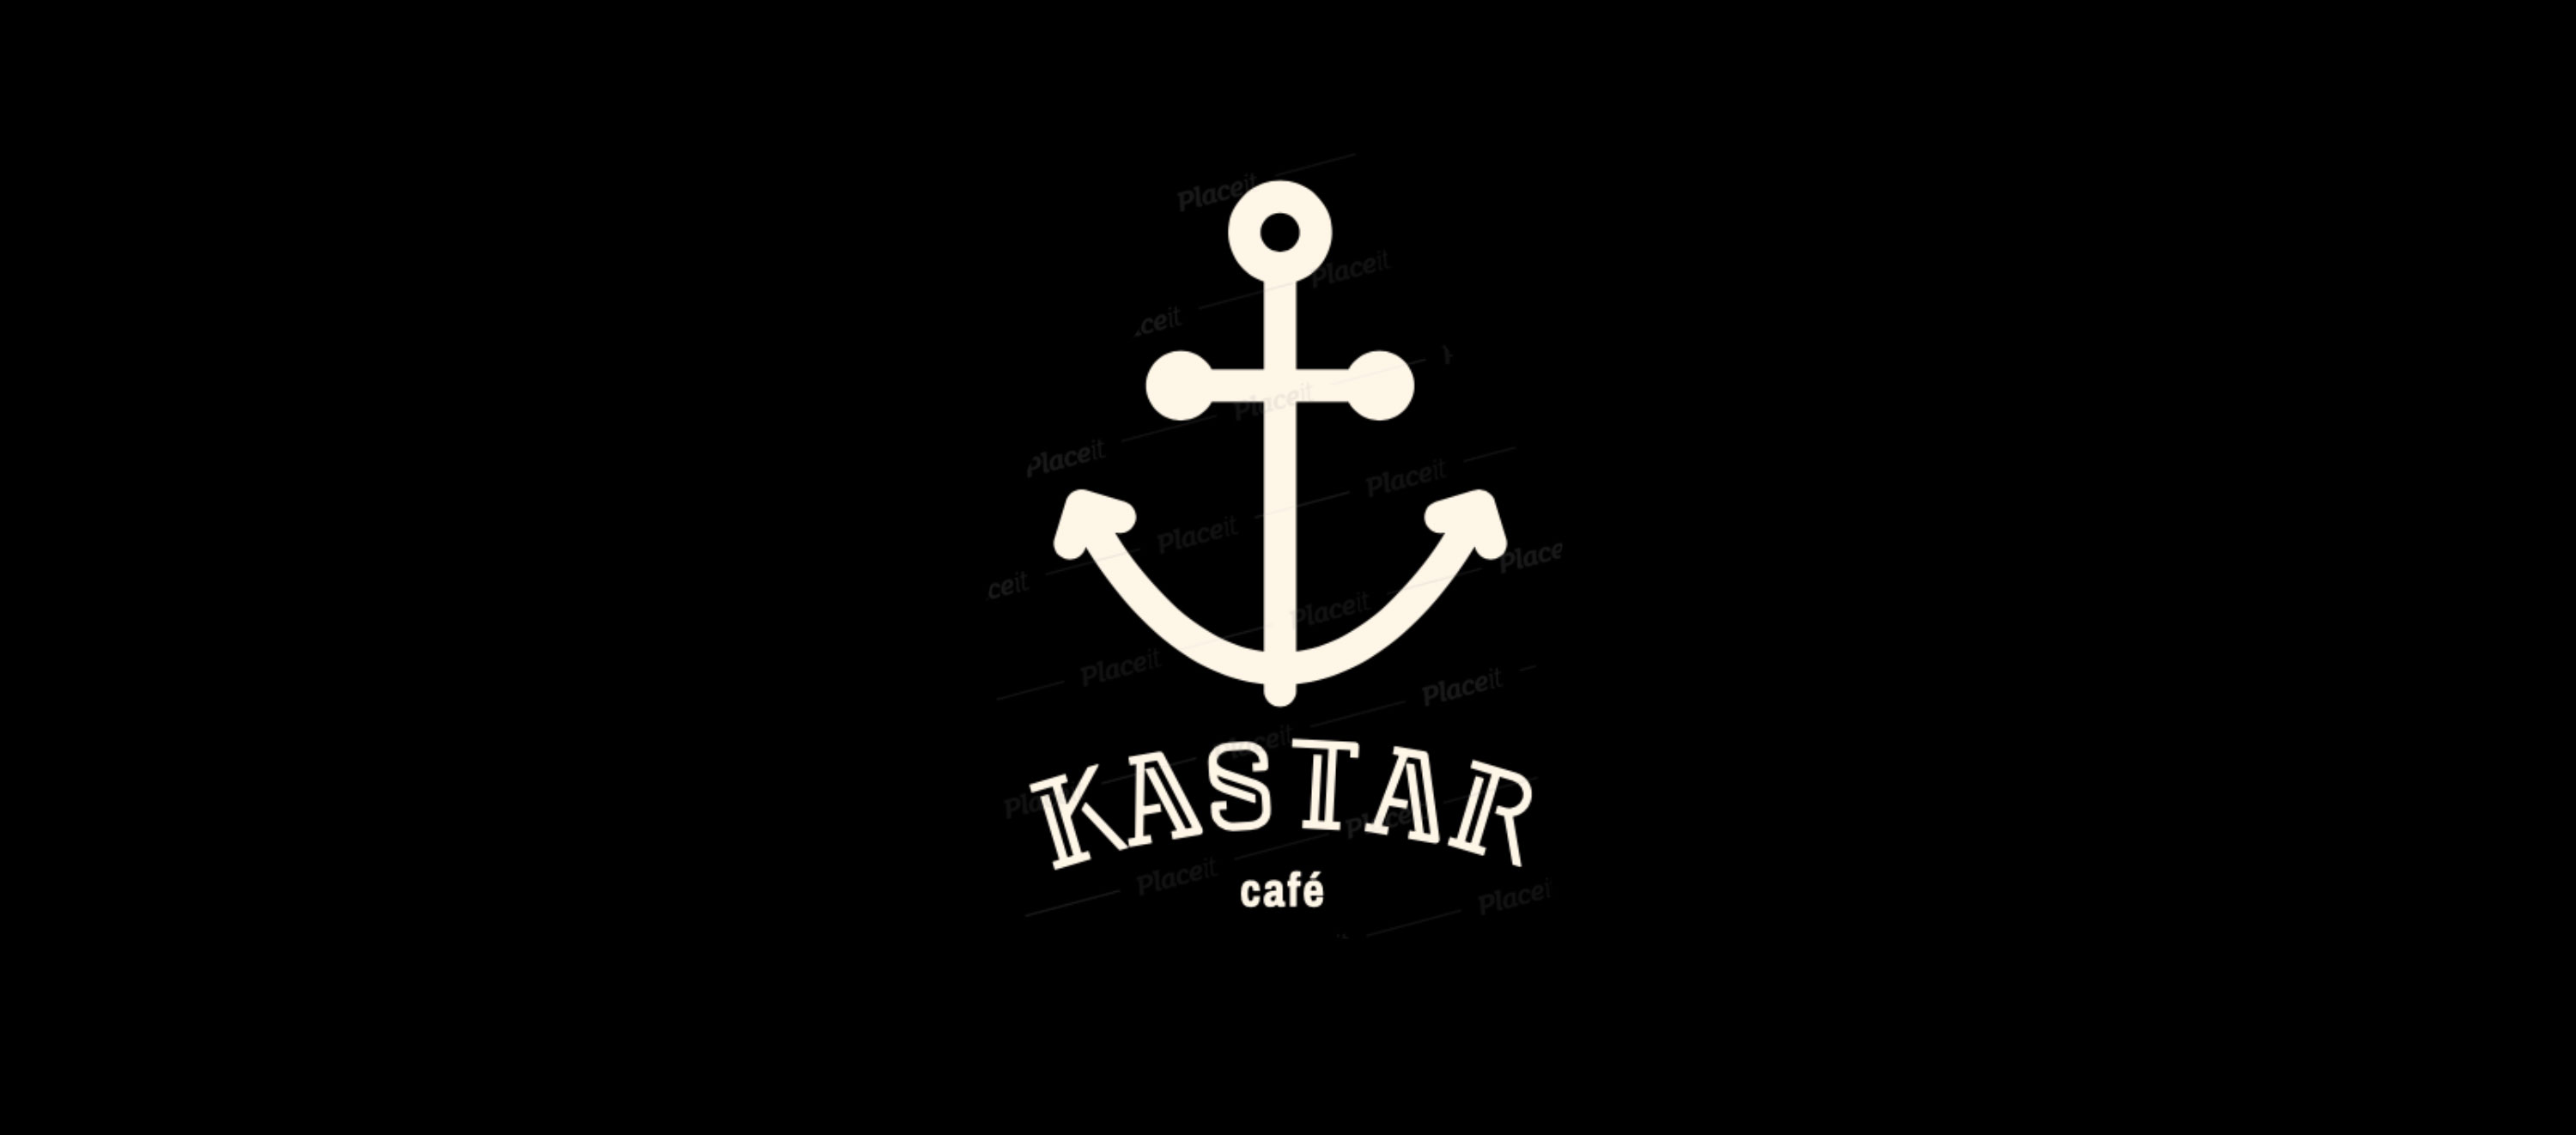 Kastar cafe